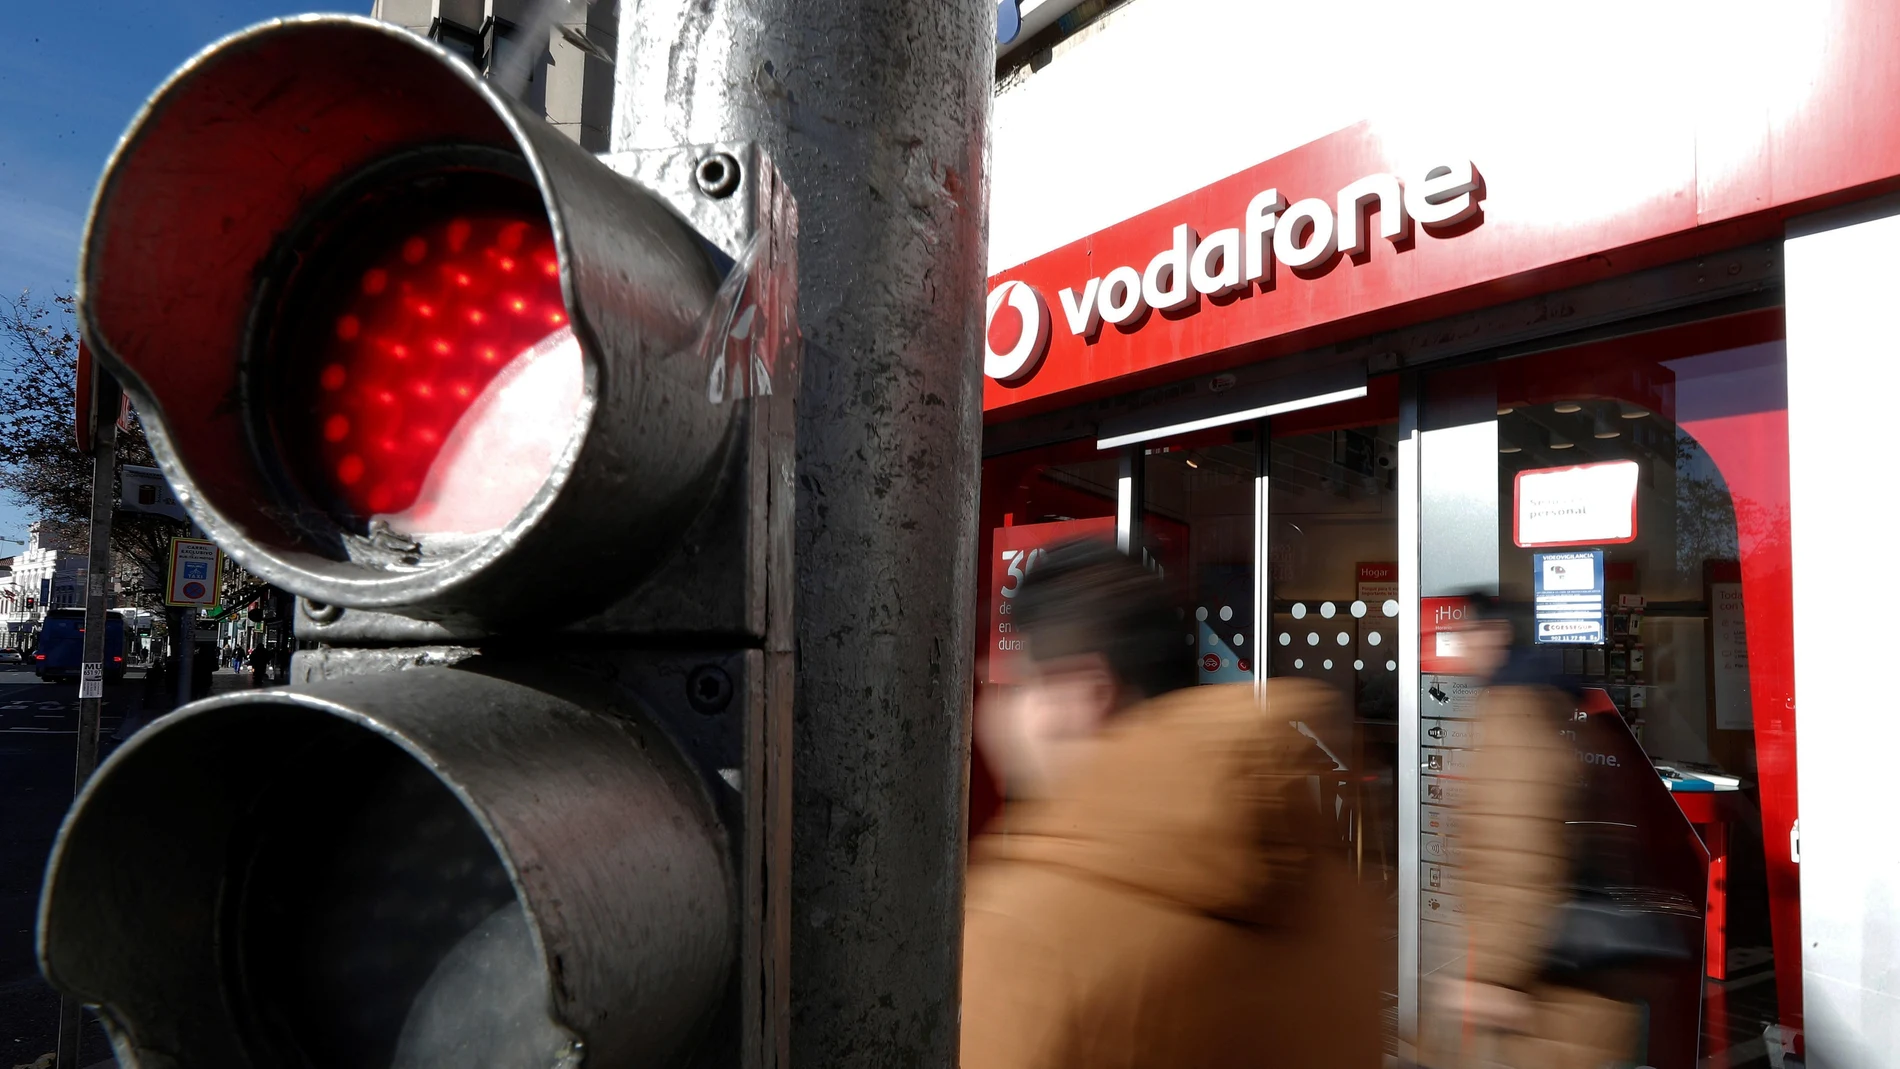  Vodafone España.